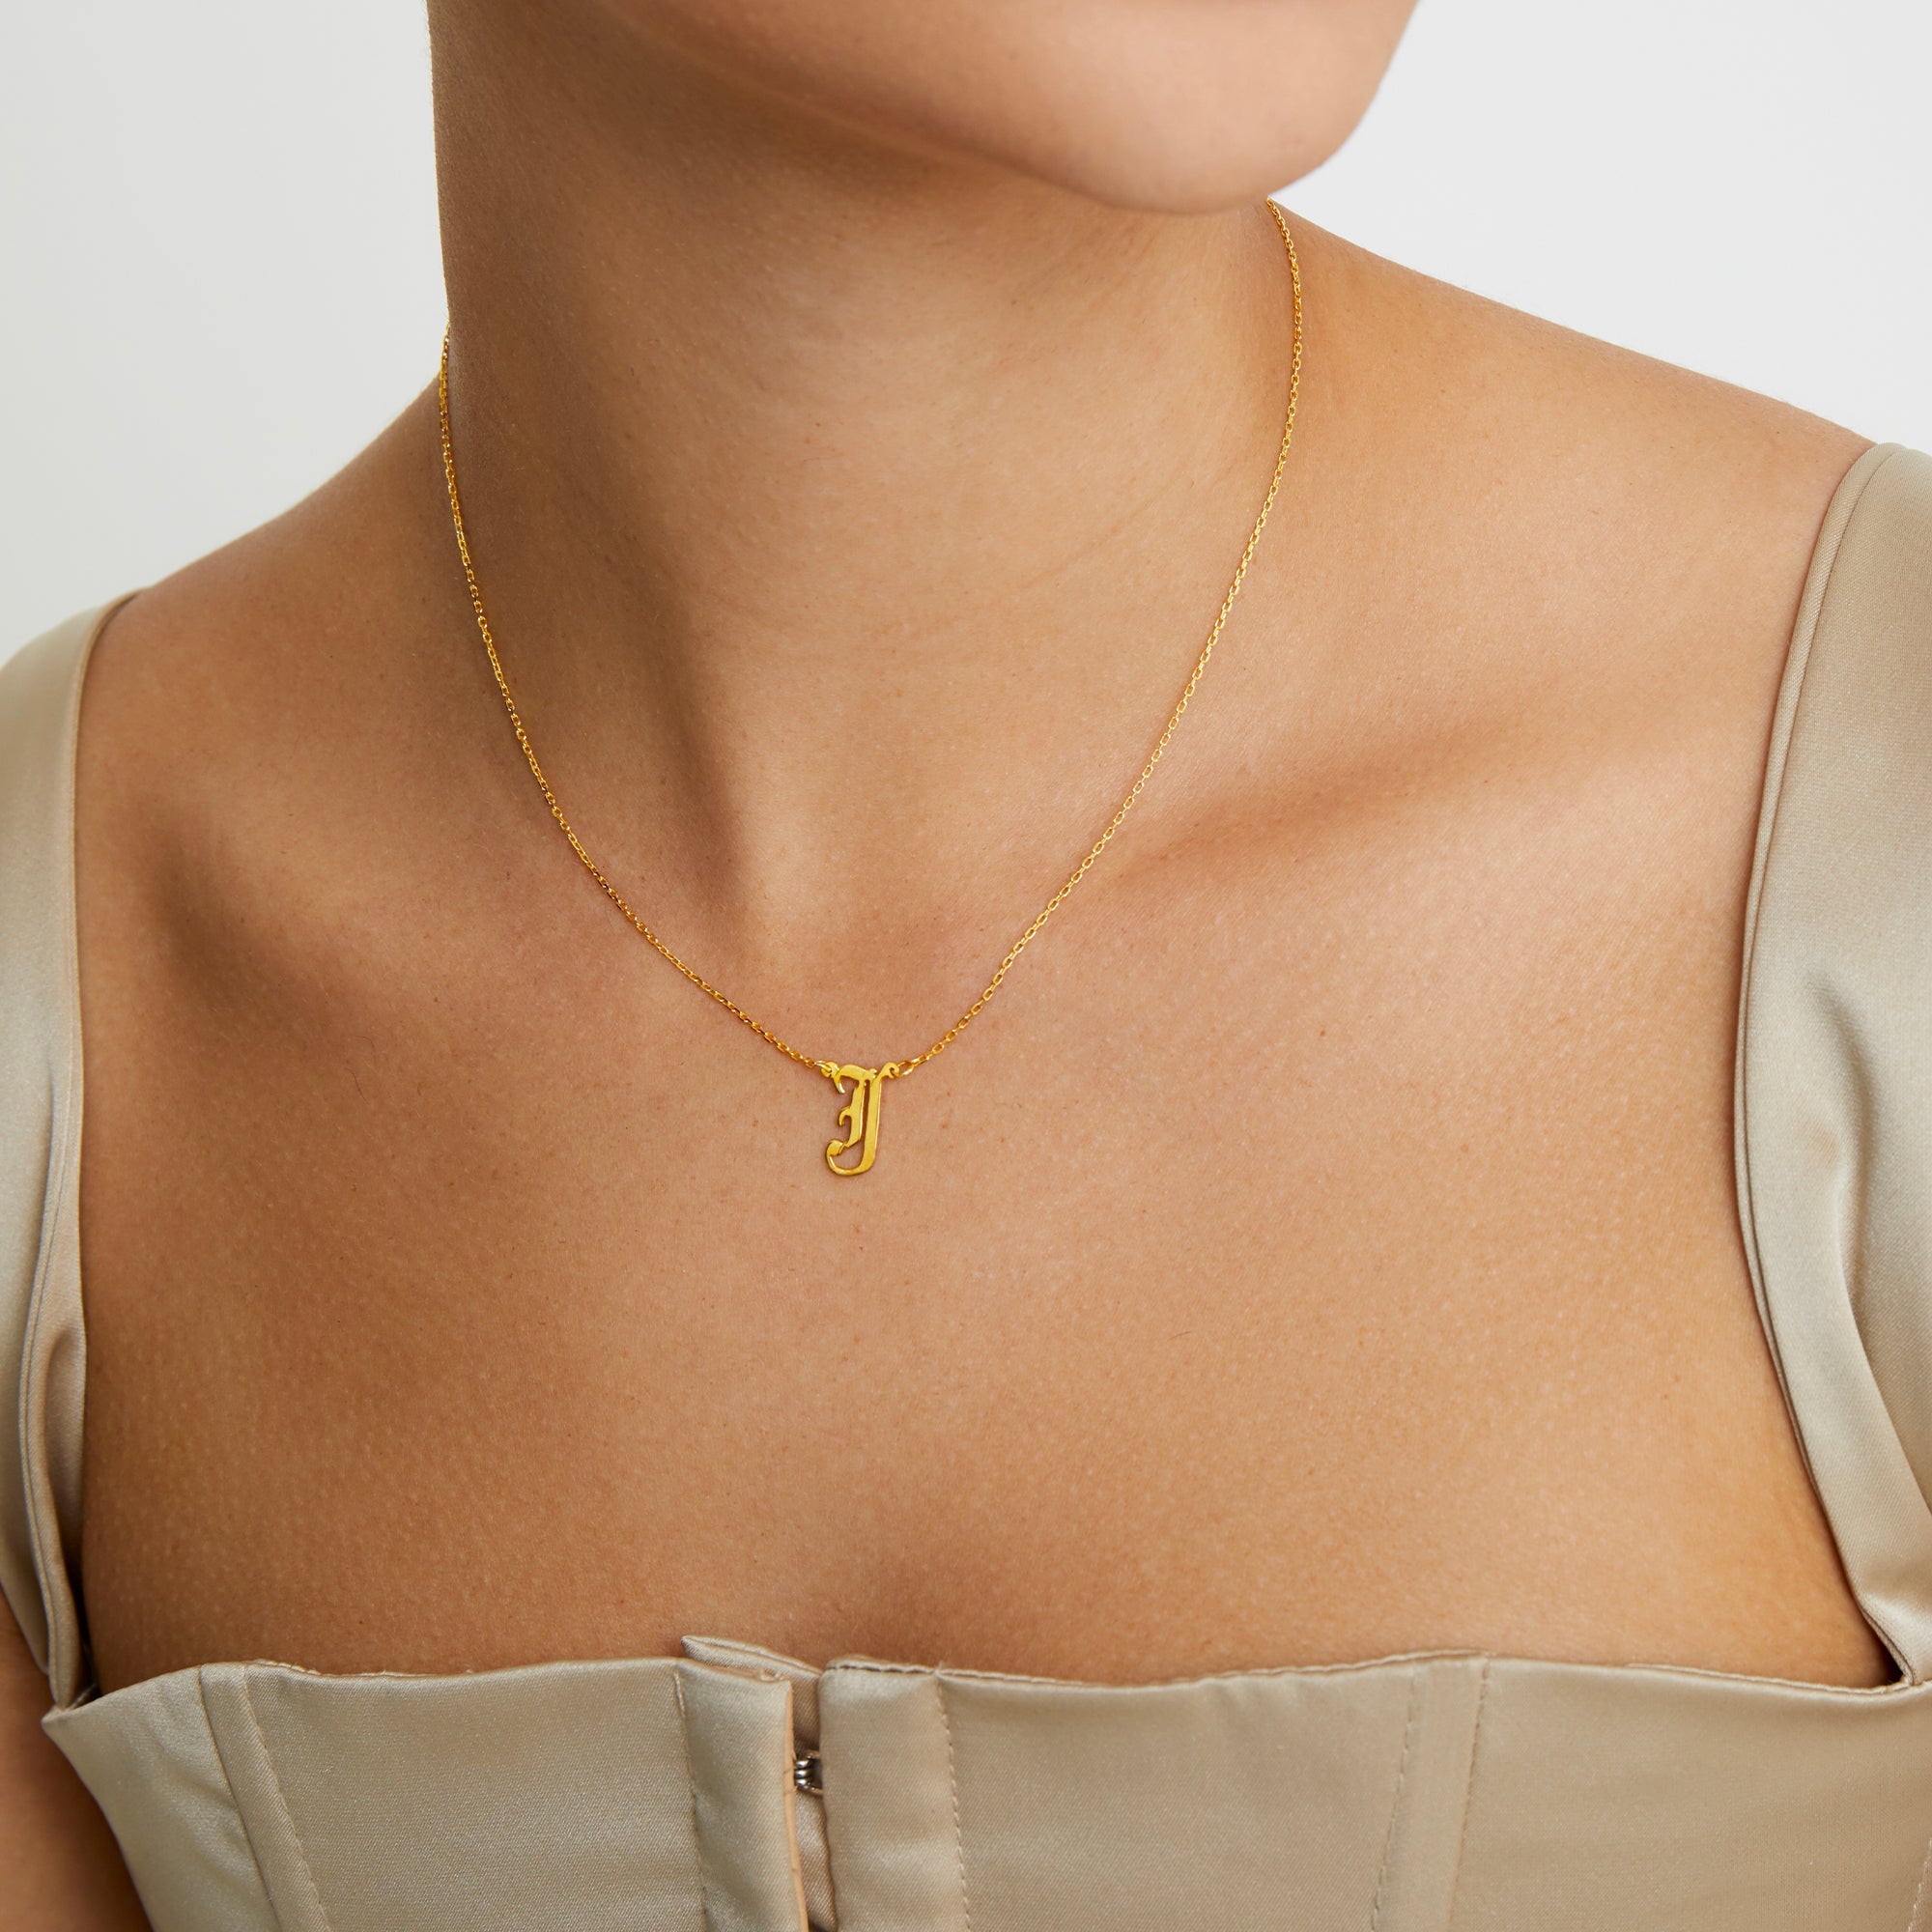 Gothic initial necklace – AURUM the label